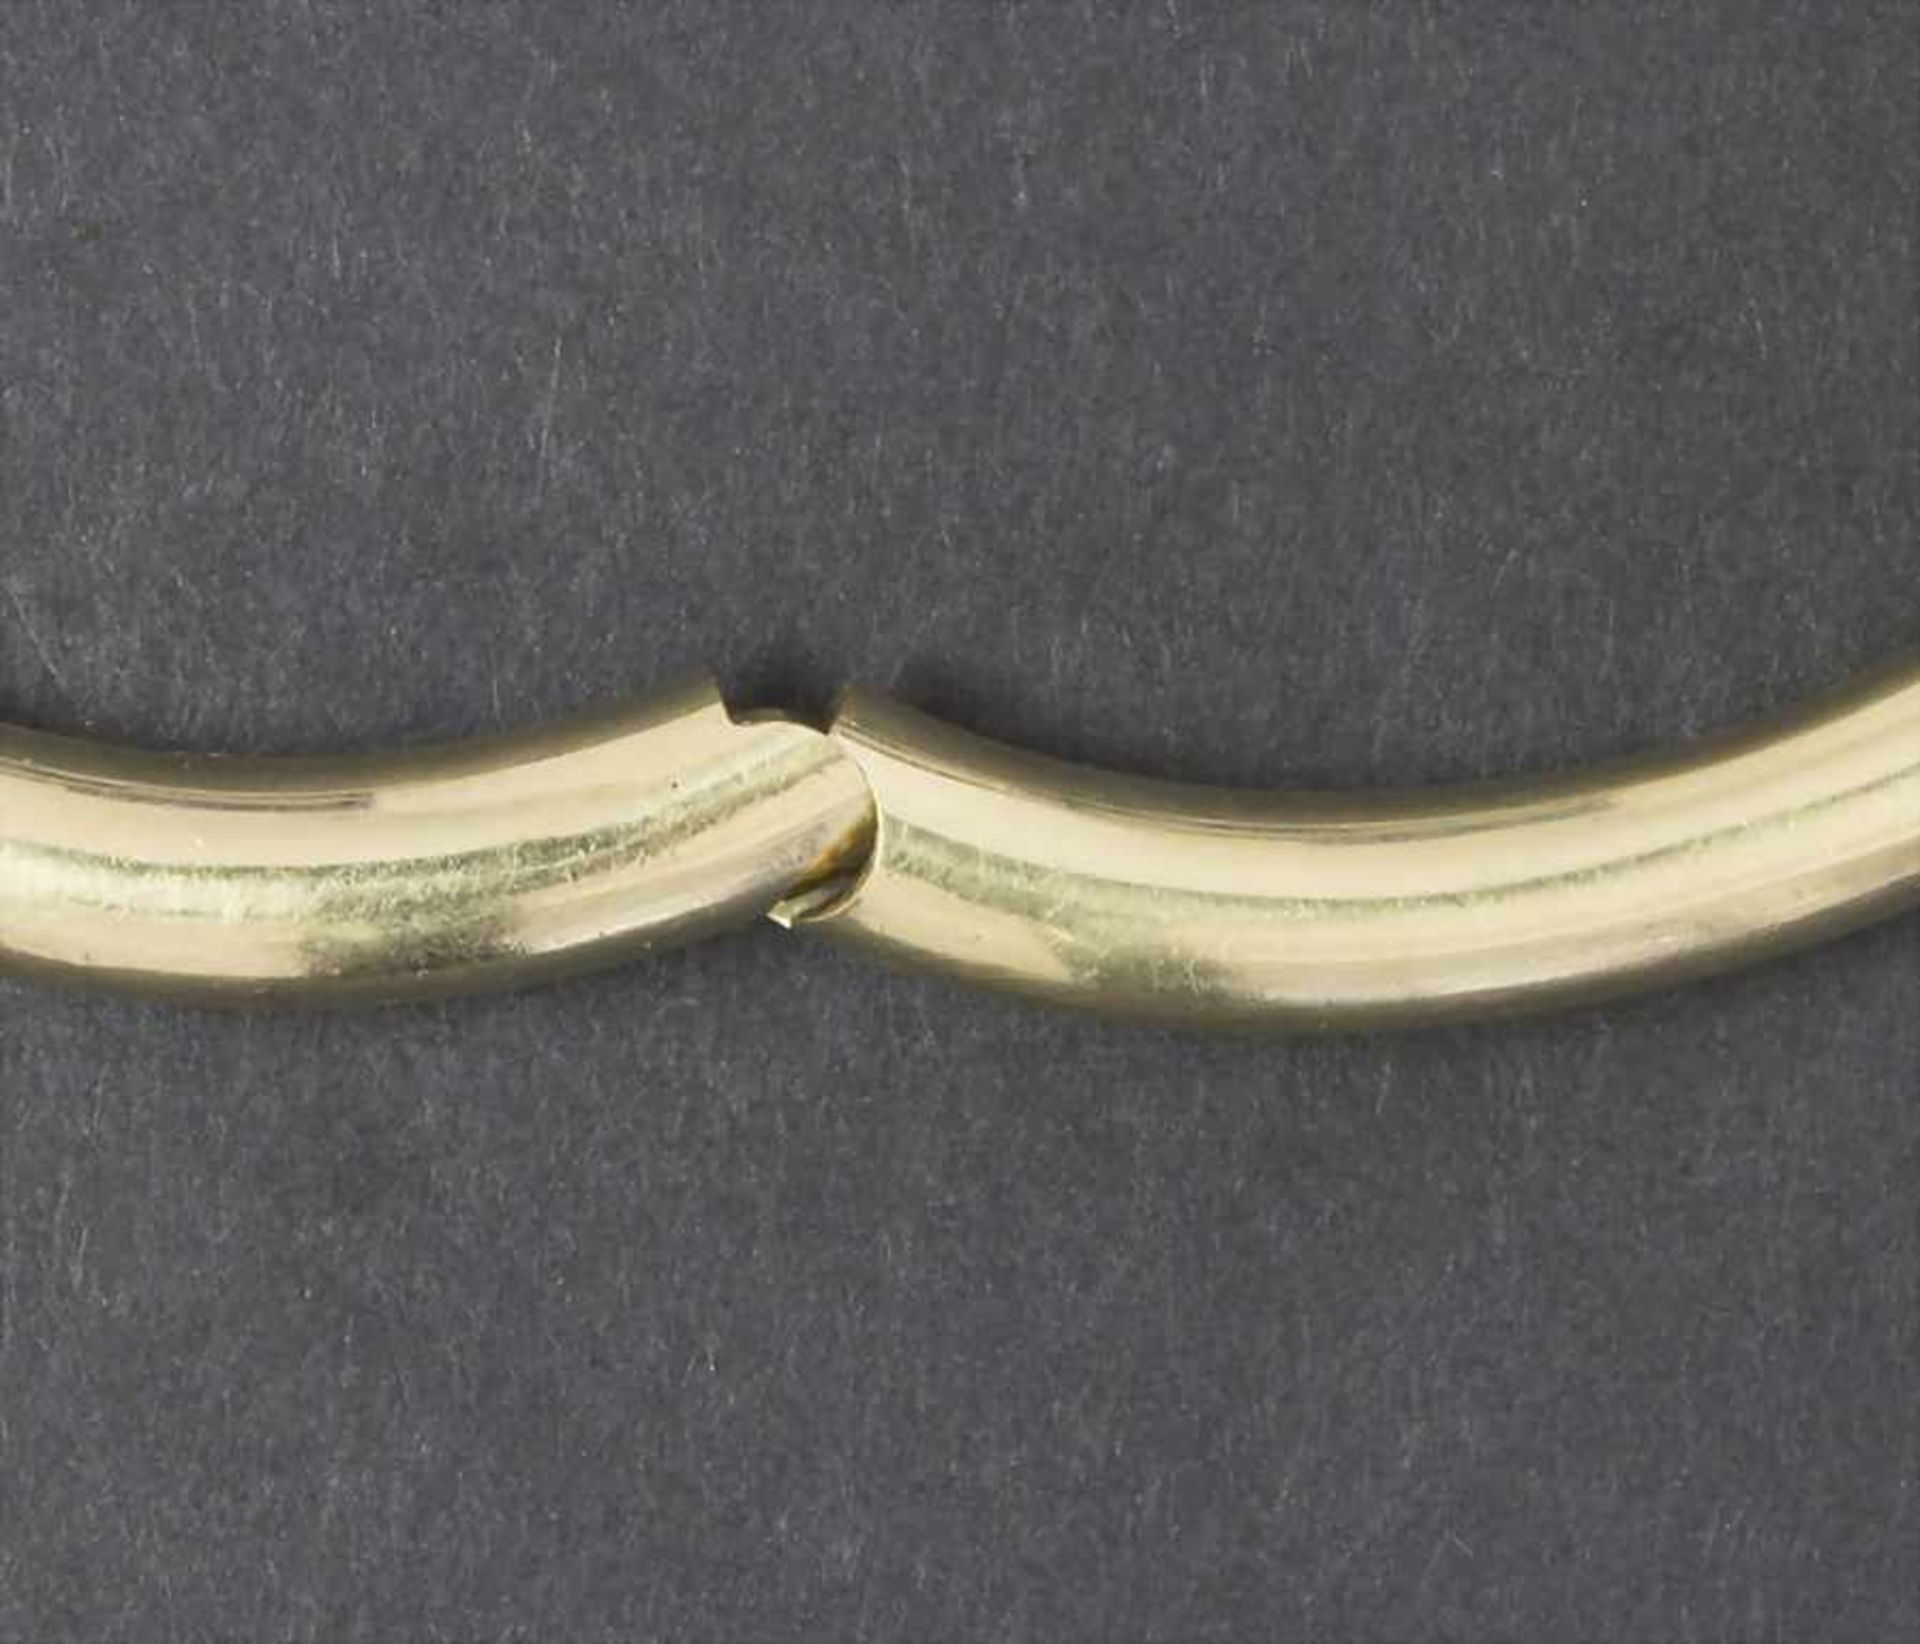 Armreif / A bracelet, 20 Jh.Material: Gelbgold Au 585/000 14 Kt,Maße: innen 50 x 60 mm, D. 5 mm, - Image 4 of 4